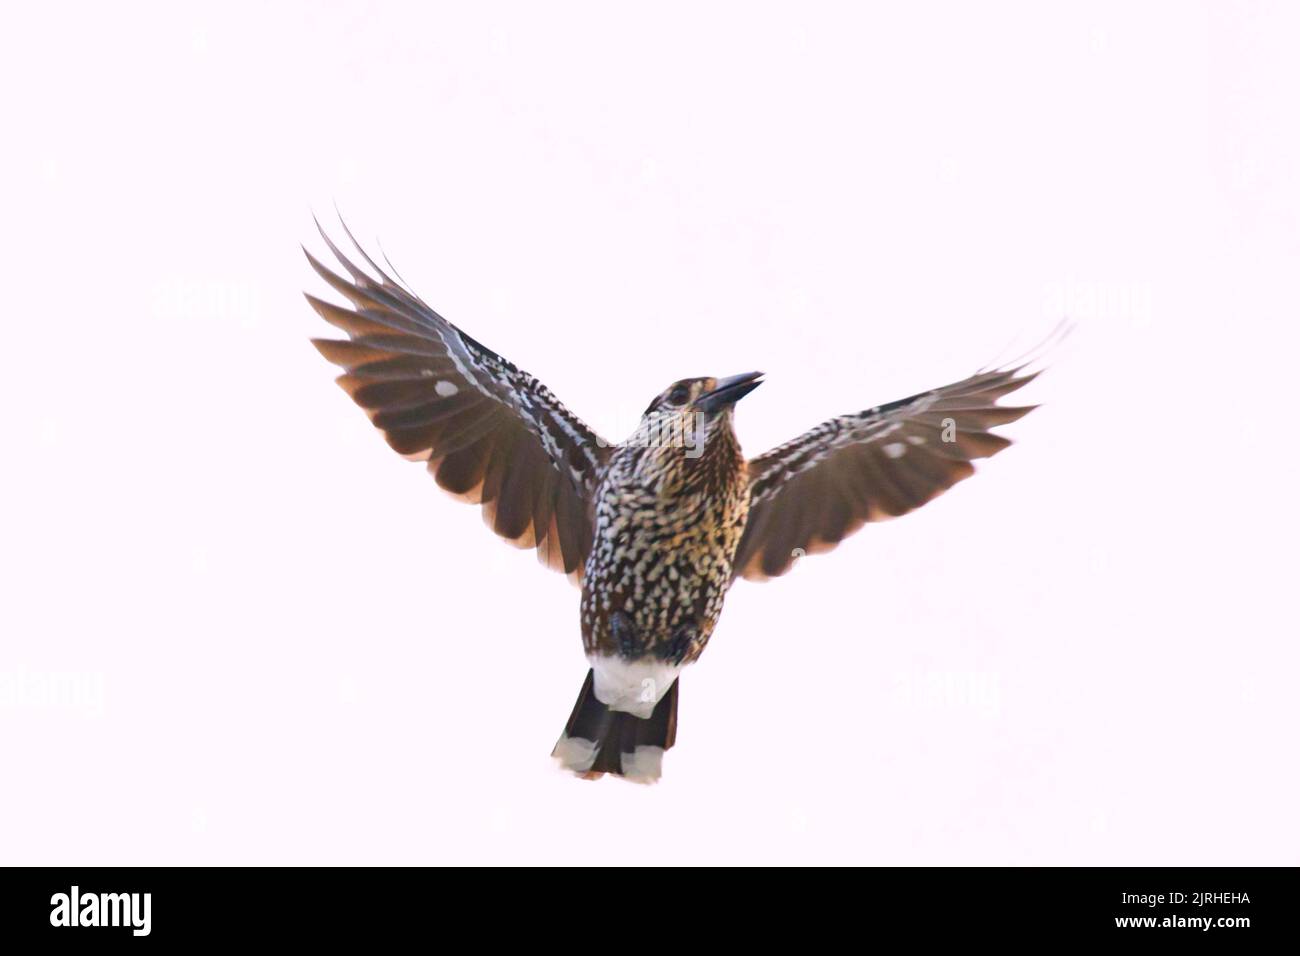 Un primo piano di un nutcracker macchiato che vola in aria con le sue ali completamente aperte Foto Stock